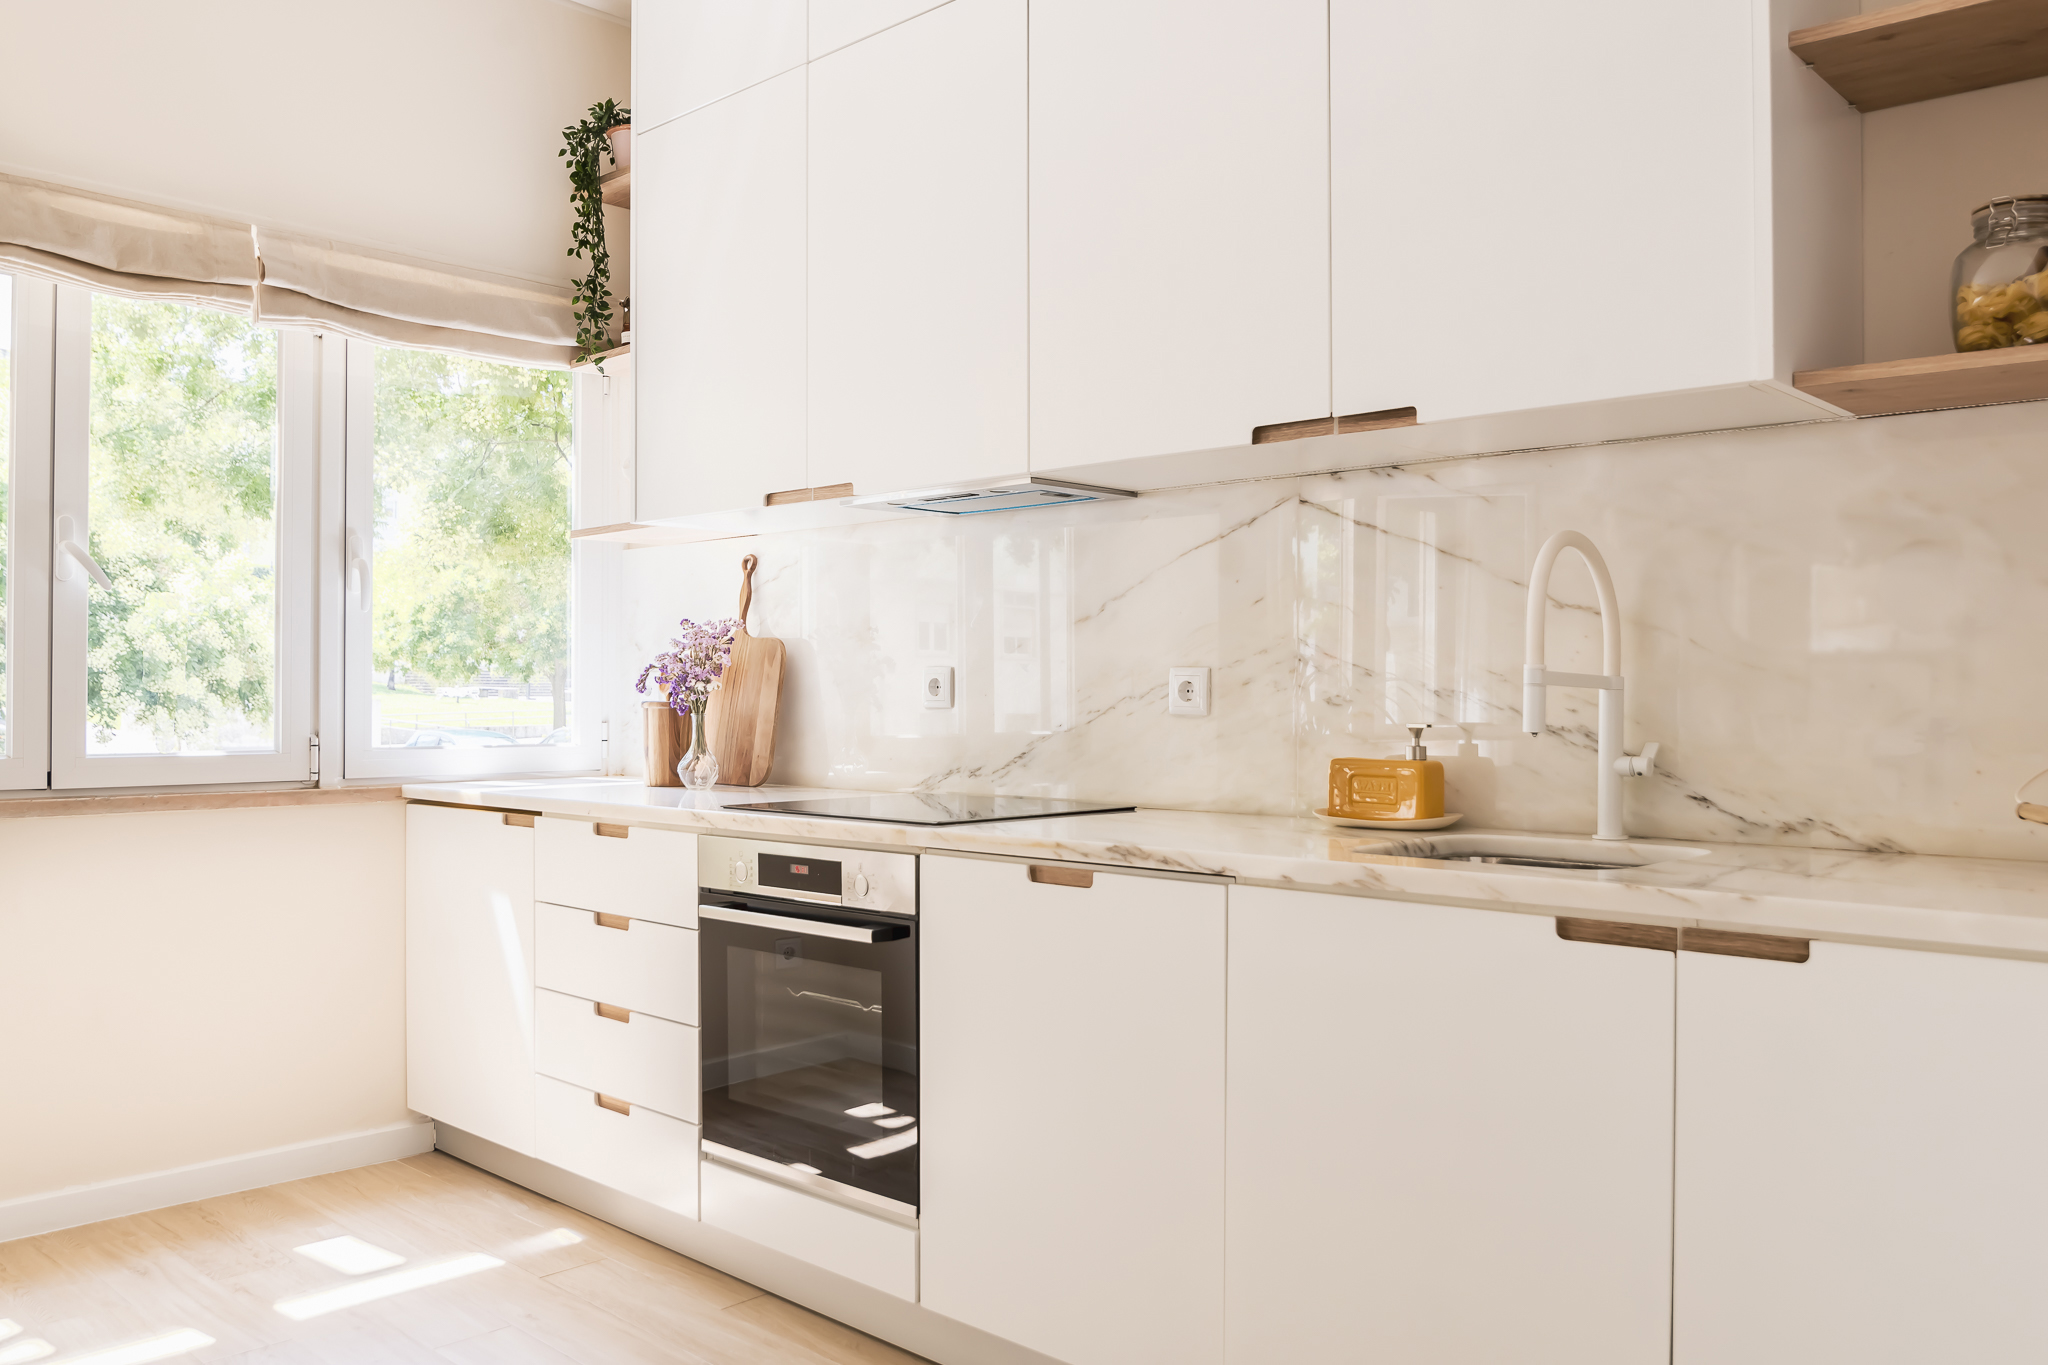 Design de interiores - Cozinha feita por medida em tons de branco e madeira inserida em open space